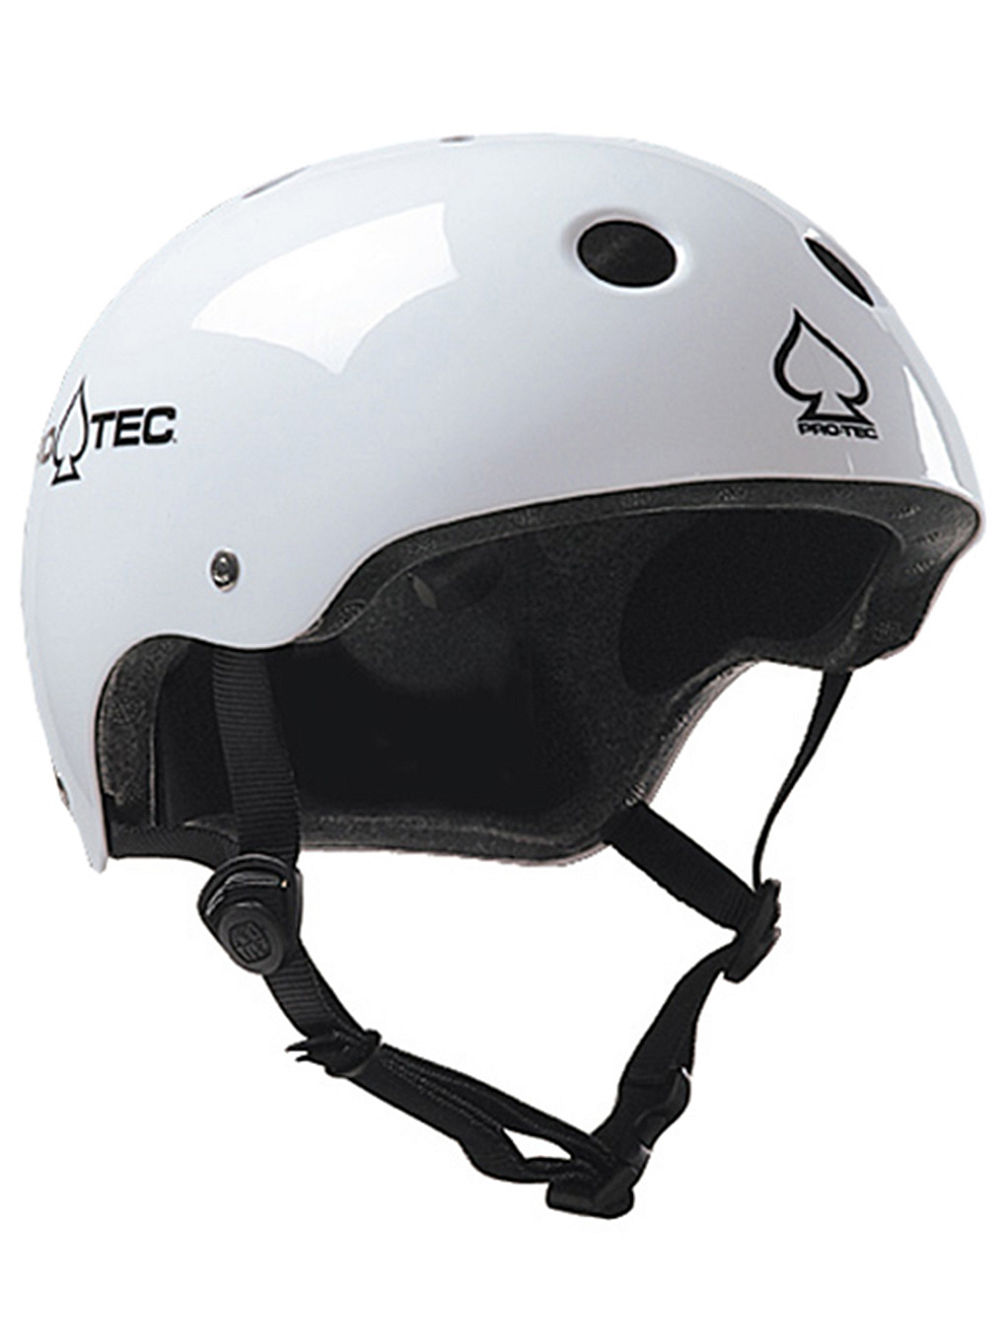 Classic Certified Helmet